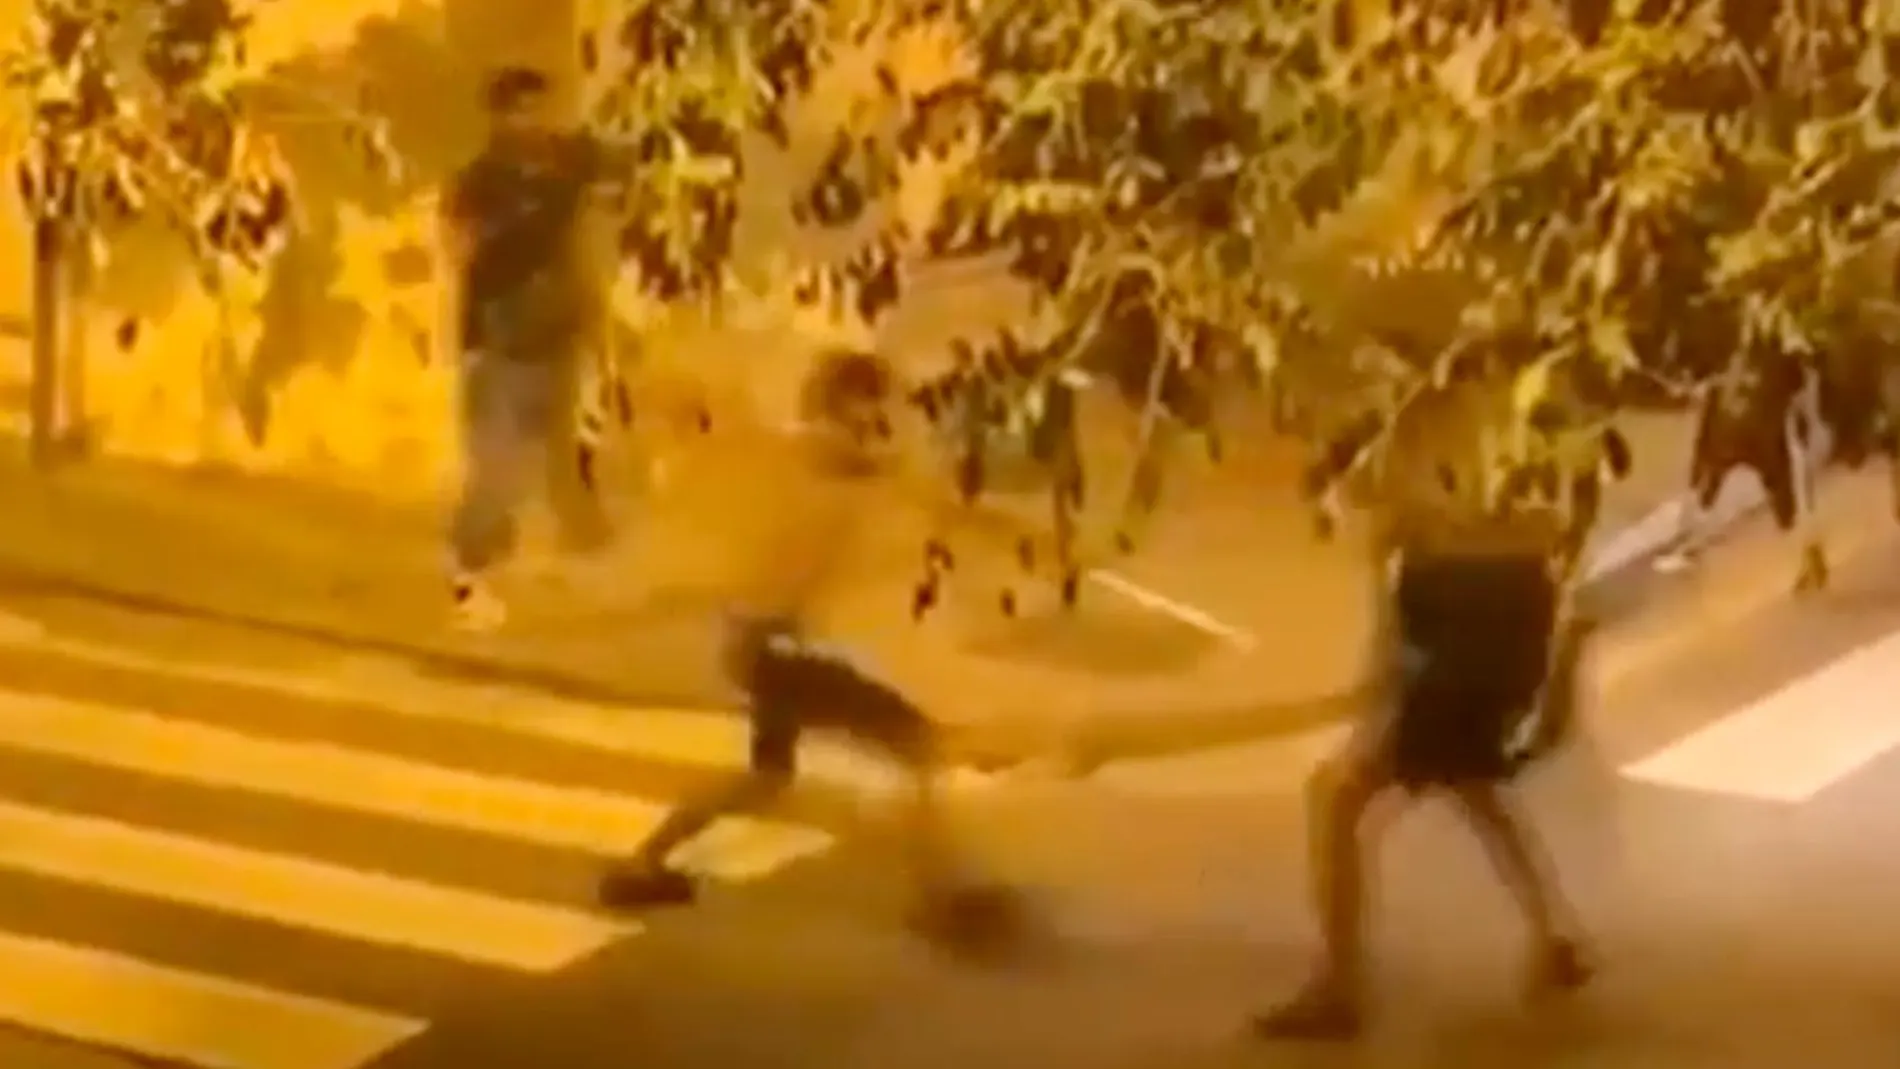 Captura del vídeo grabado de la pelea entre jóvenes